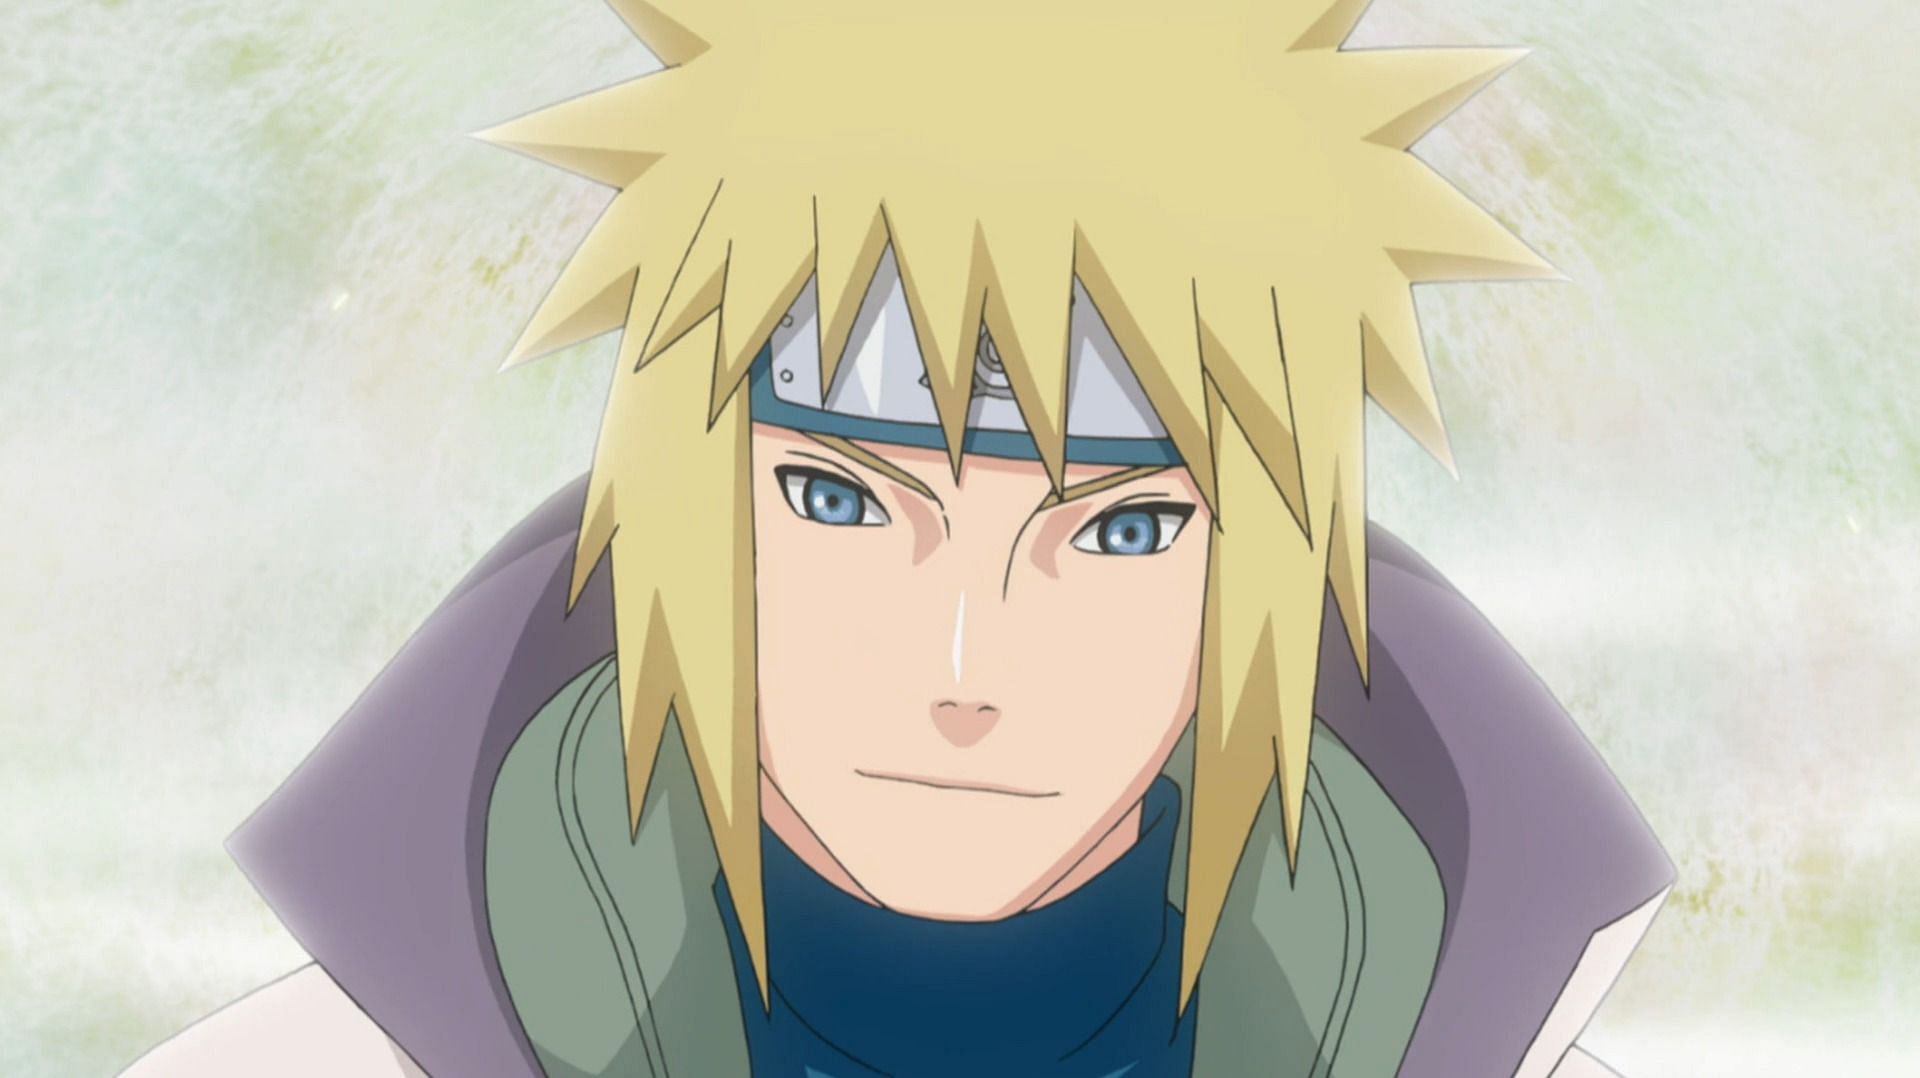 Minato Namikaze as seen in the Naruto anime (Image via Studio Pierrot)